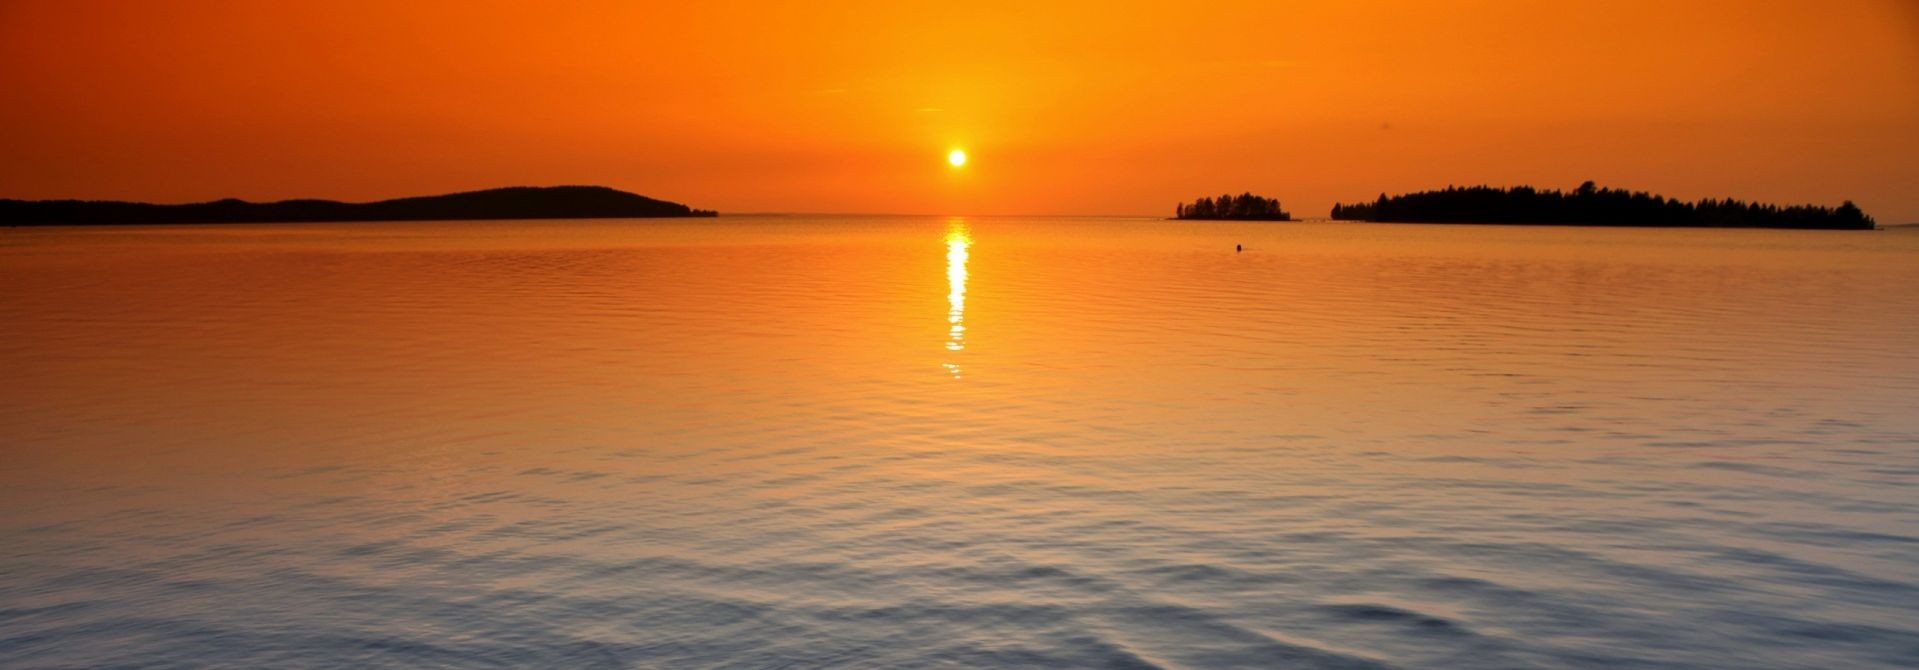 2 orange_horizon_sunset-wallpaper